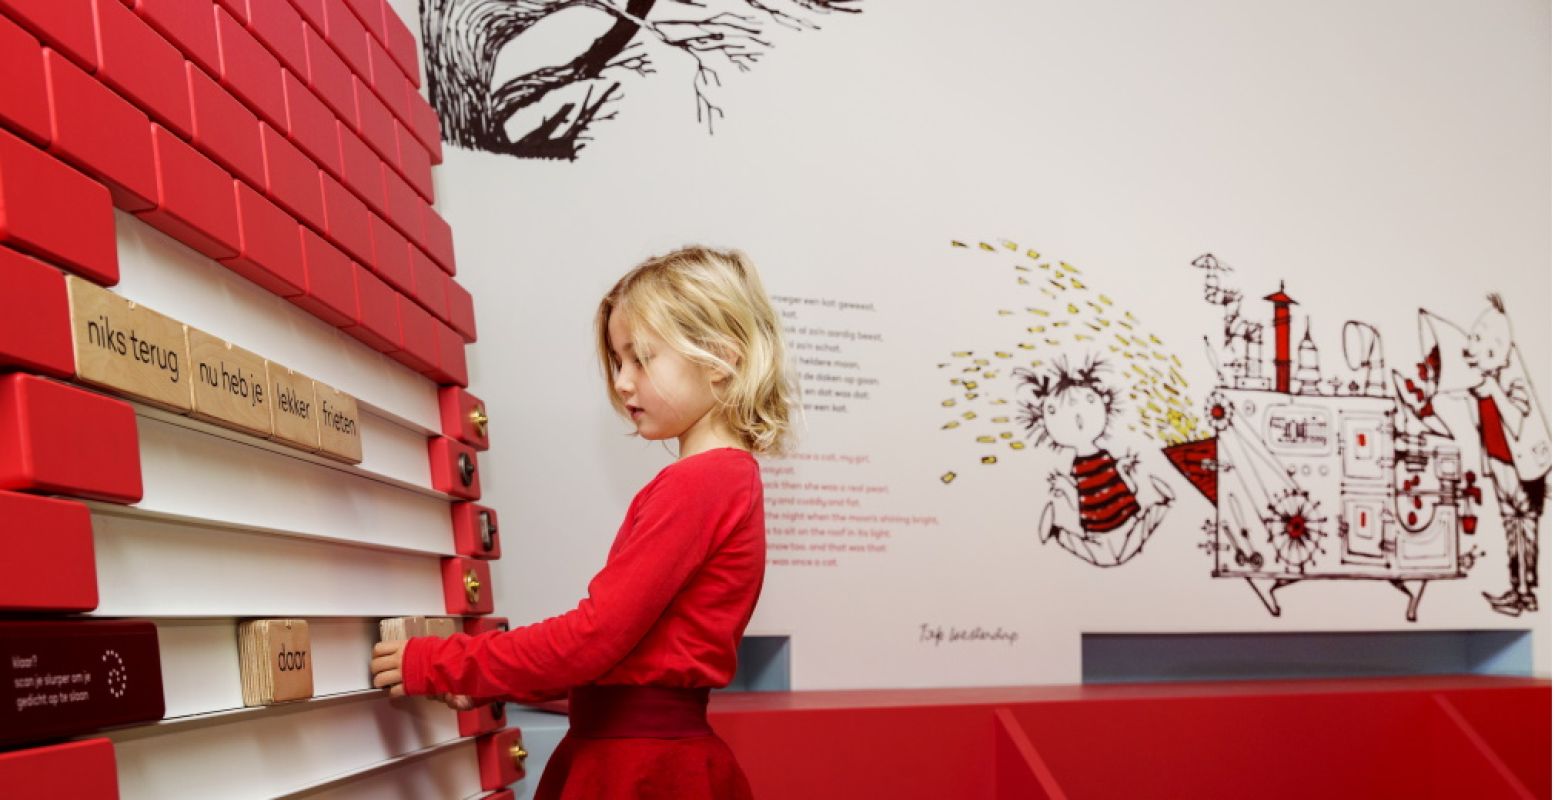 Schrijf je eigen gedicht aan de Gedichtenmuur. Foto: Kinderboekenmuseum © Eveline van Egdom.